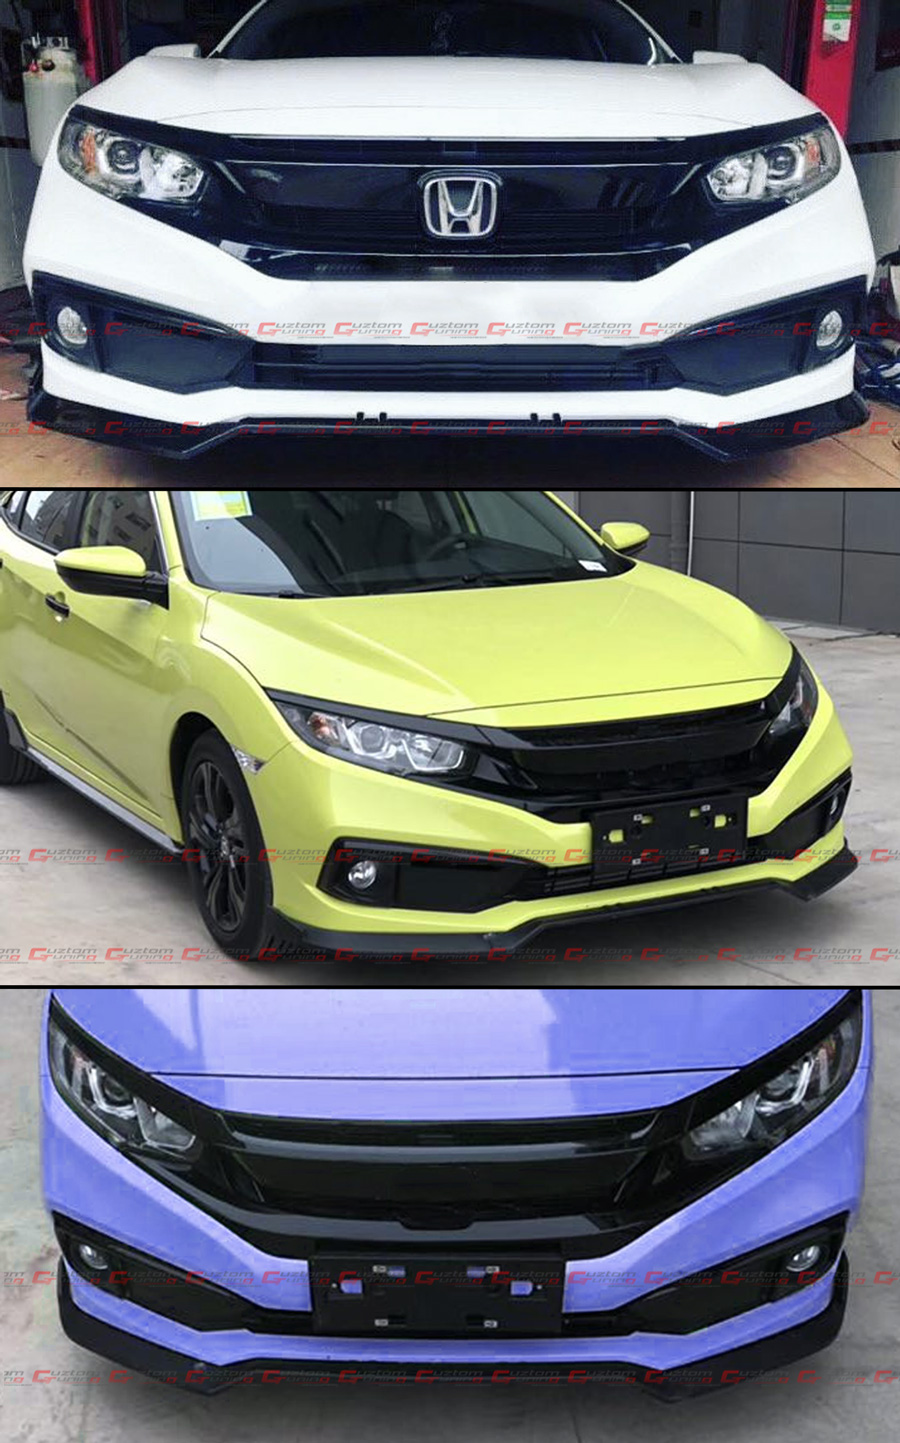 YACHN Auto-Frontlippe Für Honda Civic 2016–2019 Auto Front